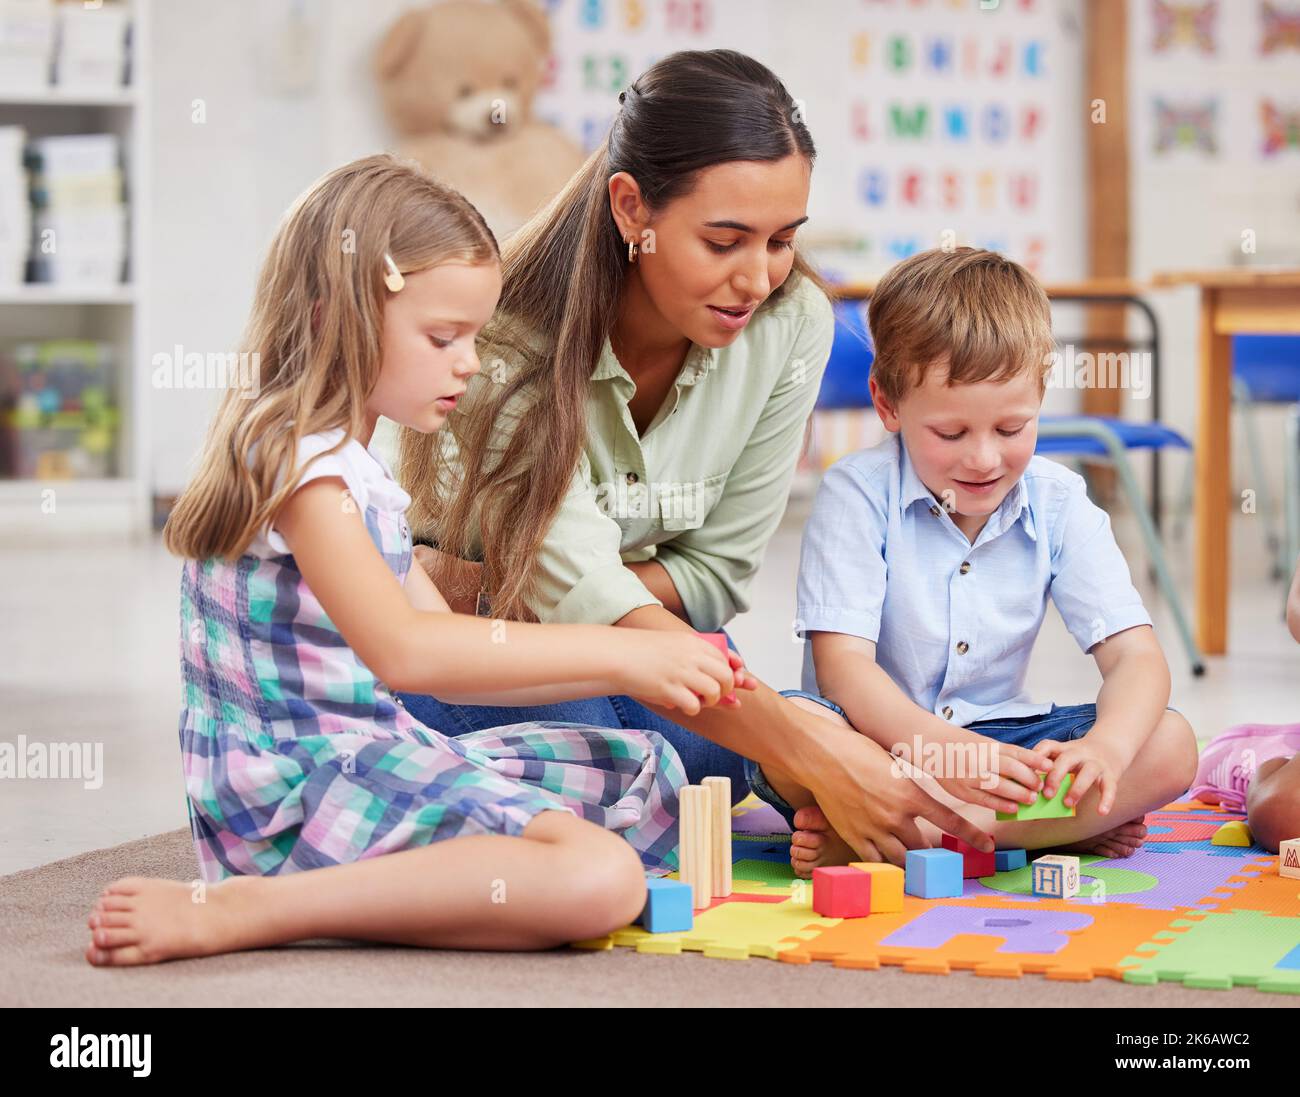 Eine junge Frau, die eine Klasse von Kindern im Vorschulalter unterrichtet, sonnt sich in der Herrlichkeit von Spielzeug und Puzzles. Stockfoto